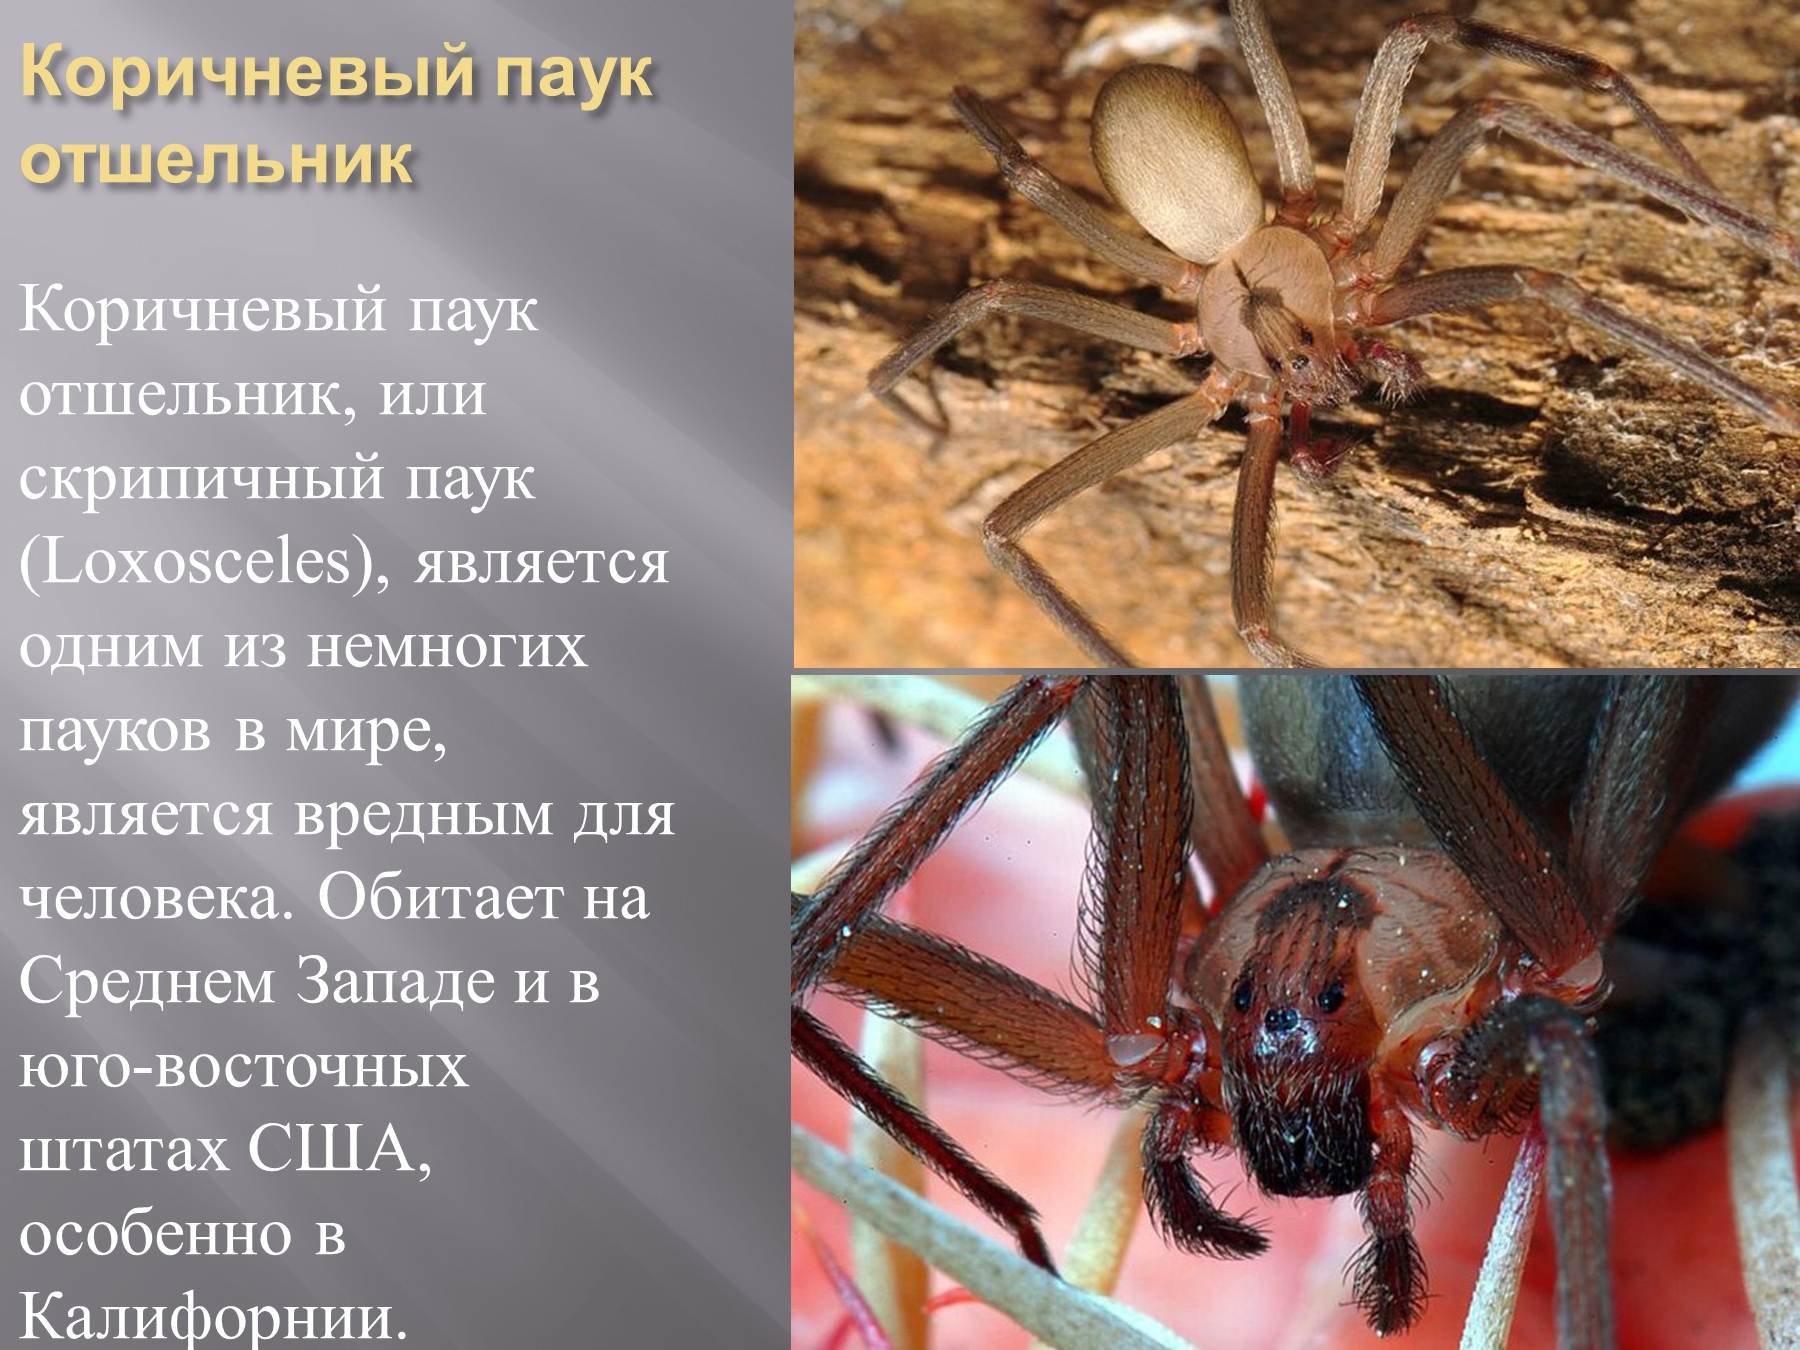 Самые самые паукообразные. Паук отшельник. Локсосцелизм паук отшельник. Самый опасный ядовитый паук в мире. Домовой паук отшельник.